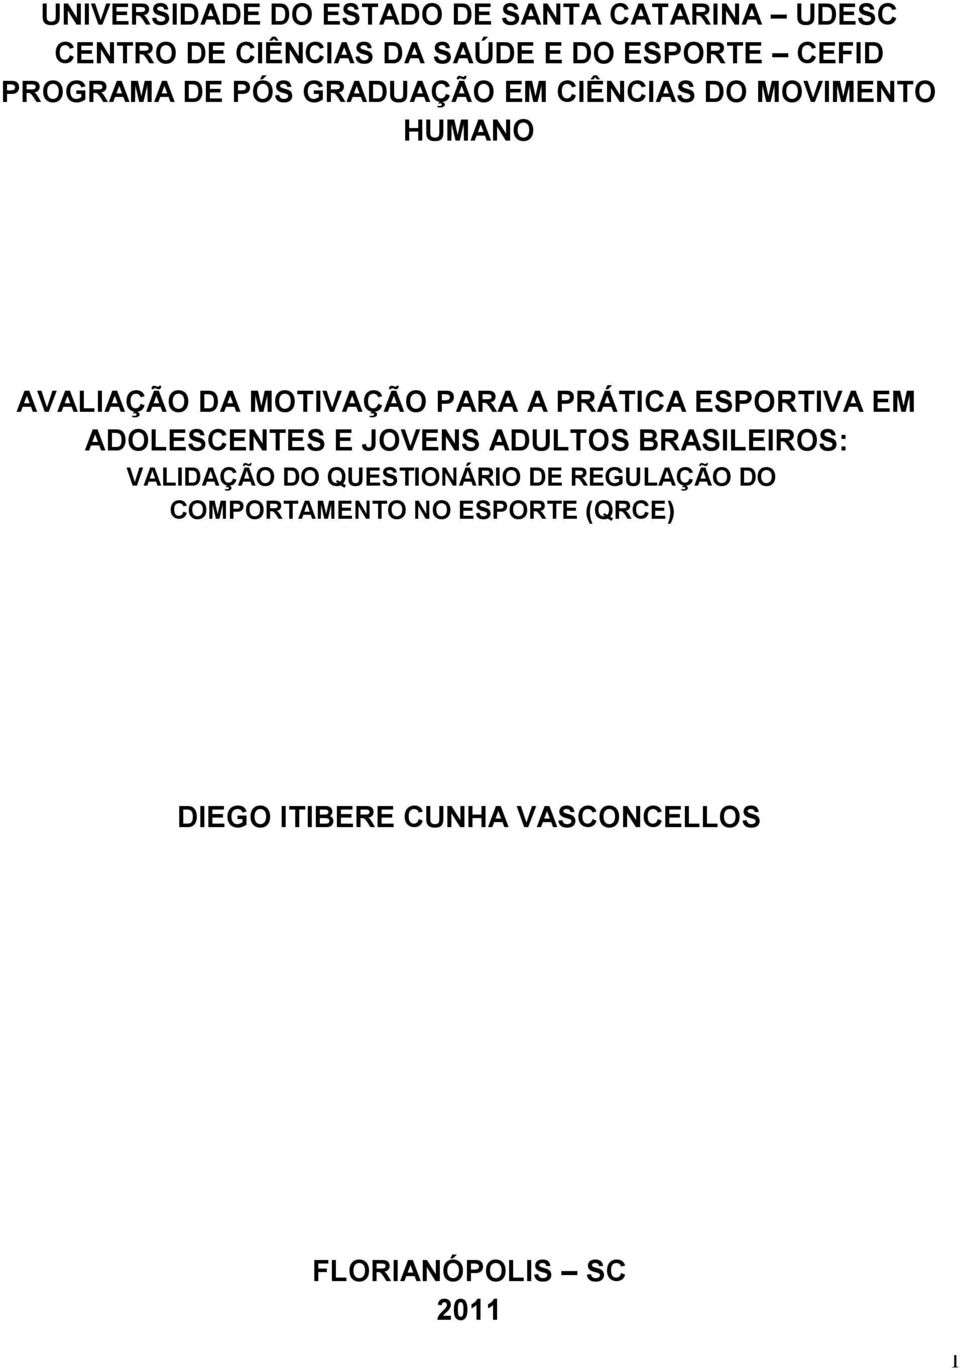 PRÁTICA ESPORTIVA EM ADOLESCENTES E JOVENS ADULTOS BRASILEIROS: VALIDAÇÃO DO QUESTIONÁRIO DE